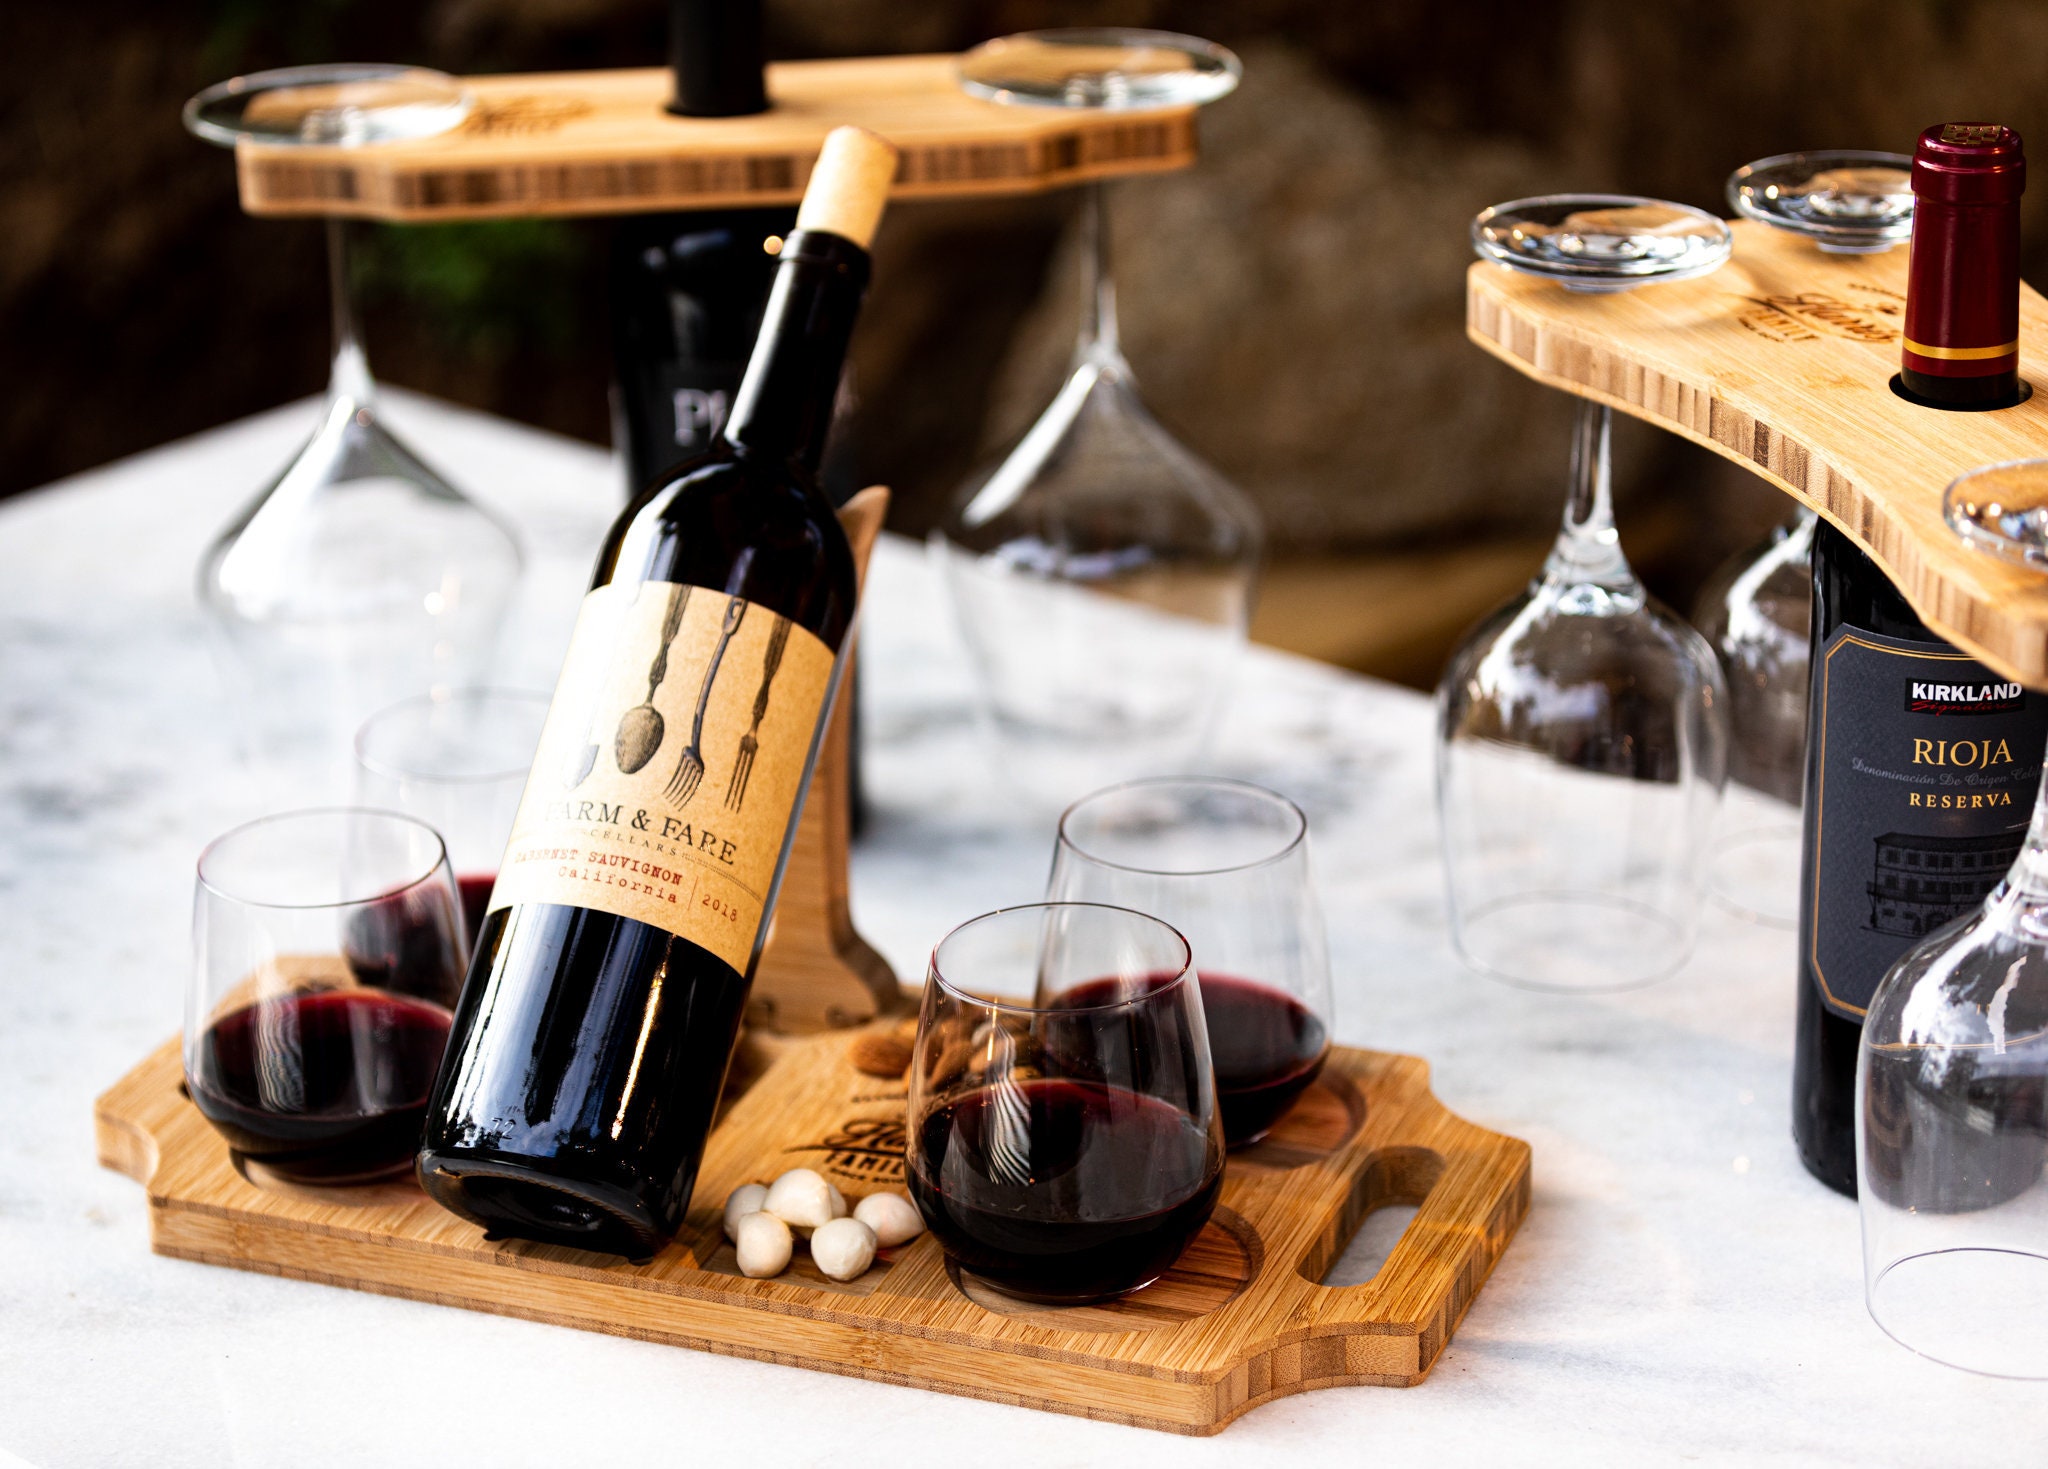 Wine Gifts for Couple Wedding Gift Wine Opener Set Wine -  Israel